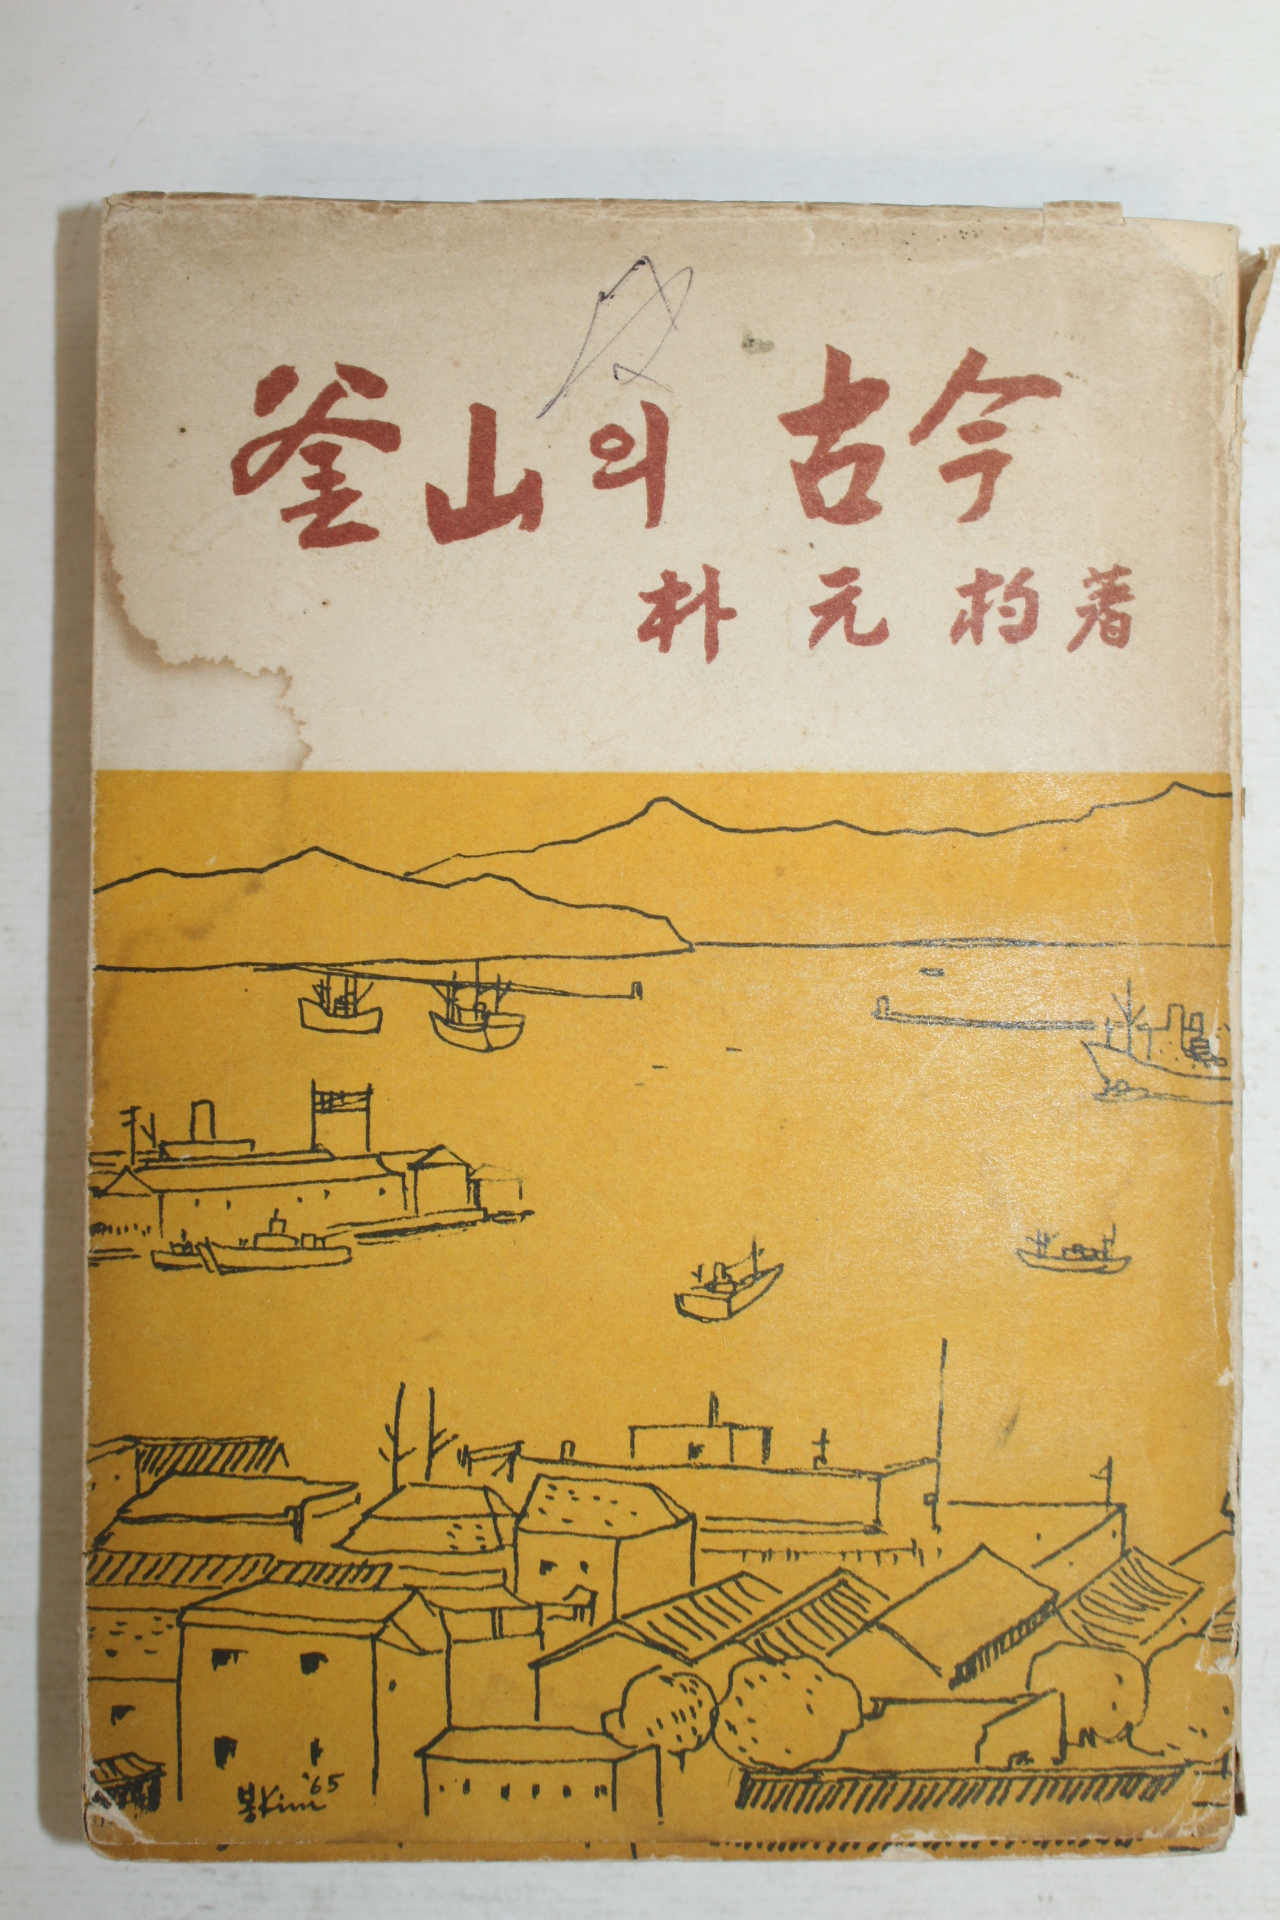 1965년 박원표(朴元杓) 부산의 고금